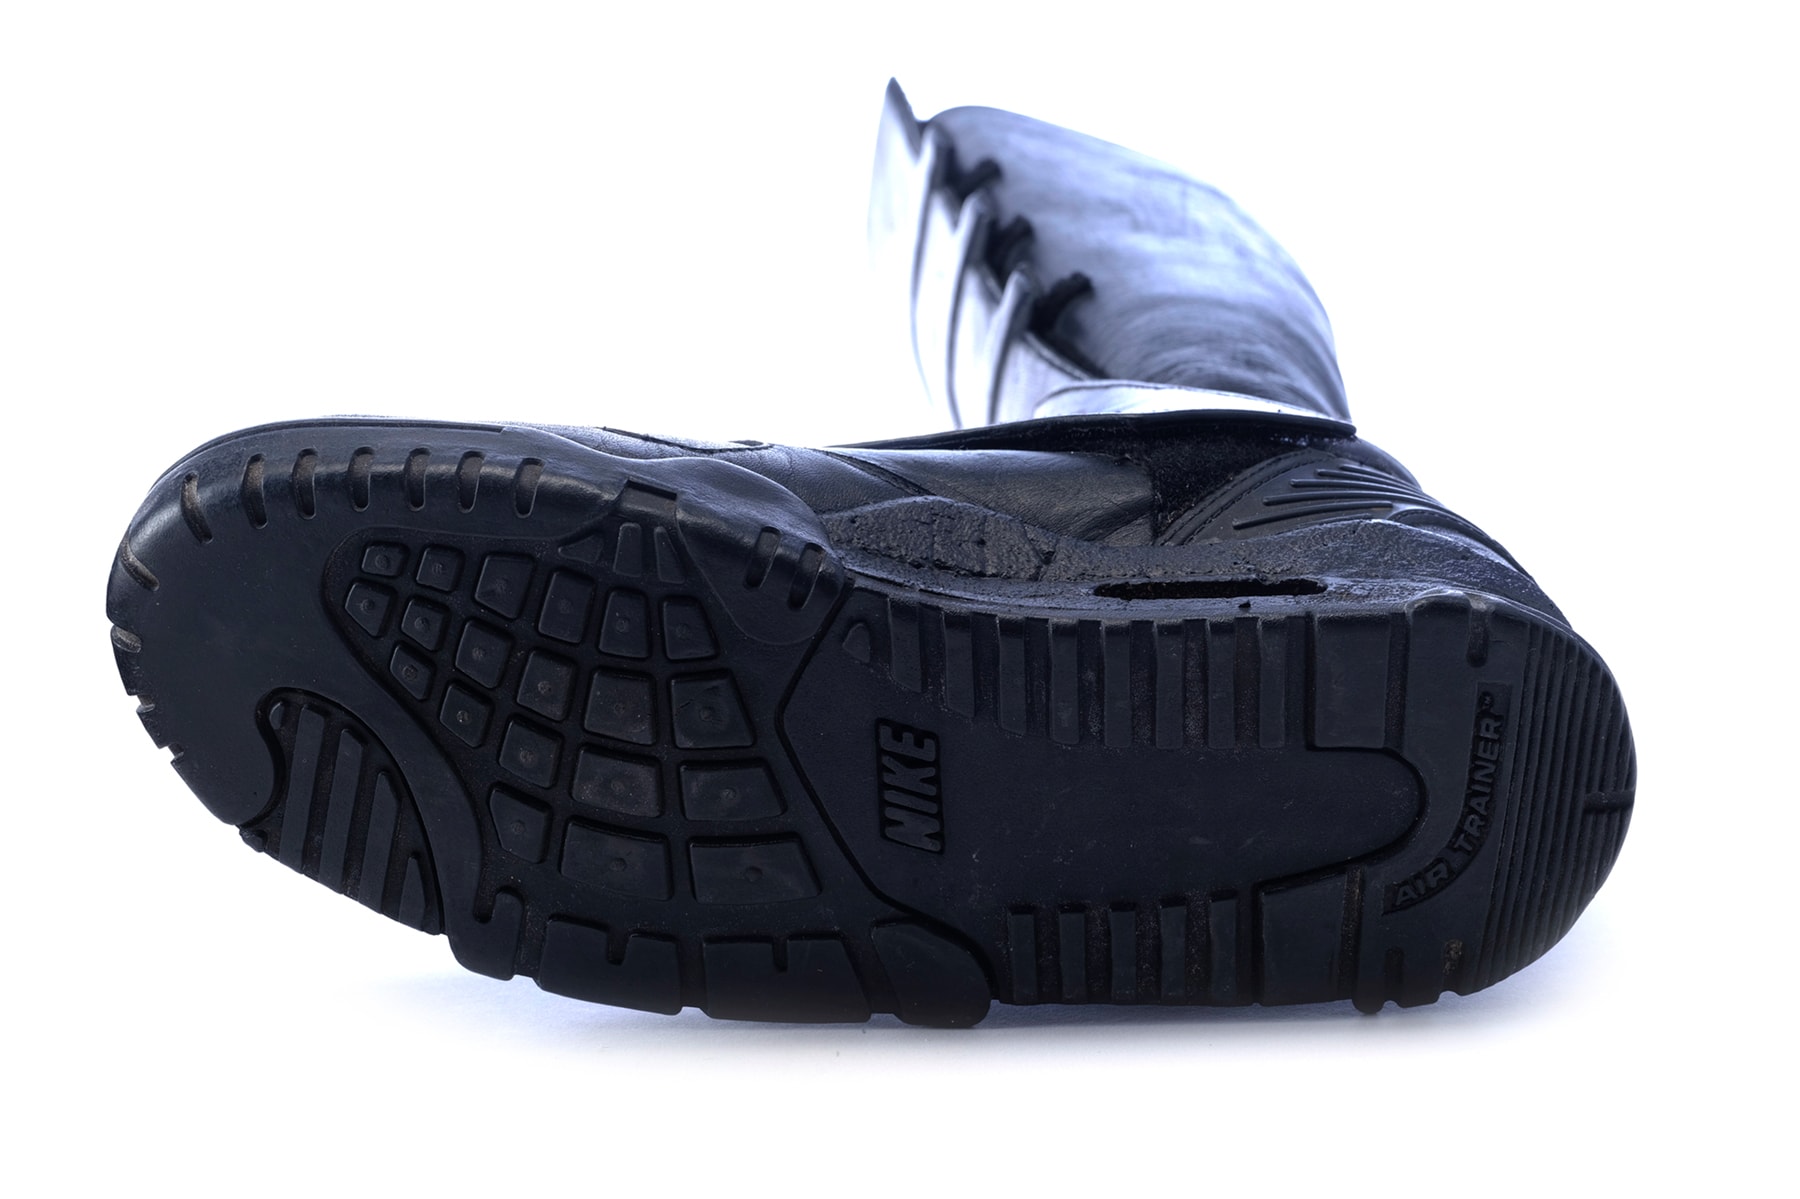 『バットマン』用にカスタムされた特別なナイキエアトレーナーが競売に Batman 1989 Michael Keaton Nike Air Trainer Bat Boots Propstore Auction shoe sneakers footwear kicks props 